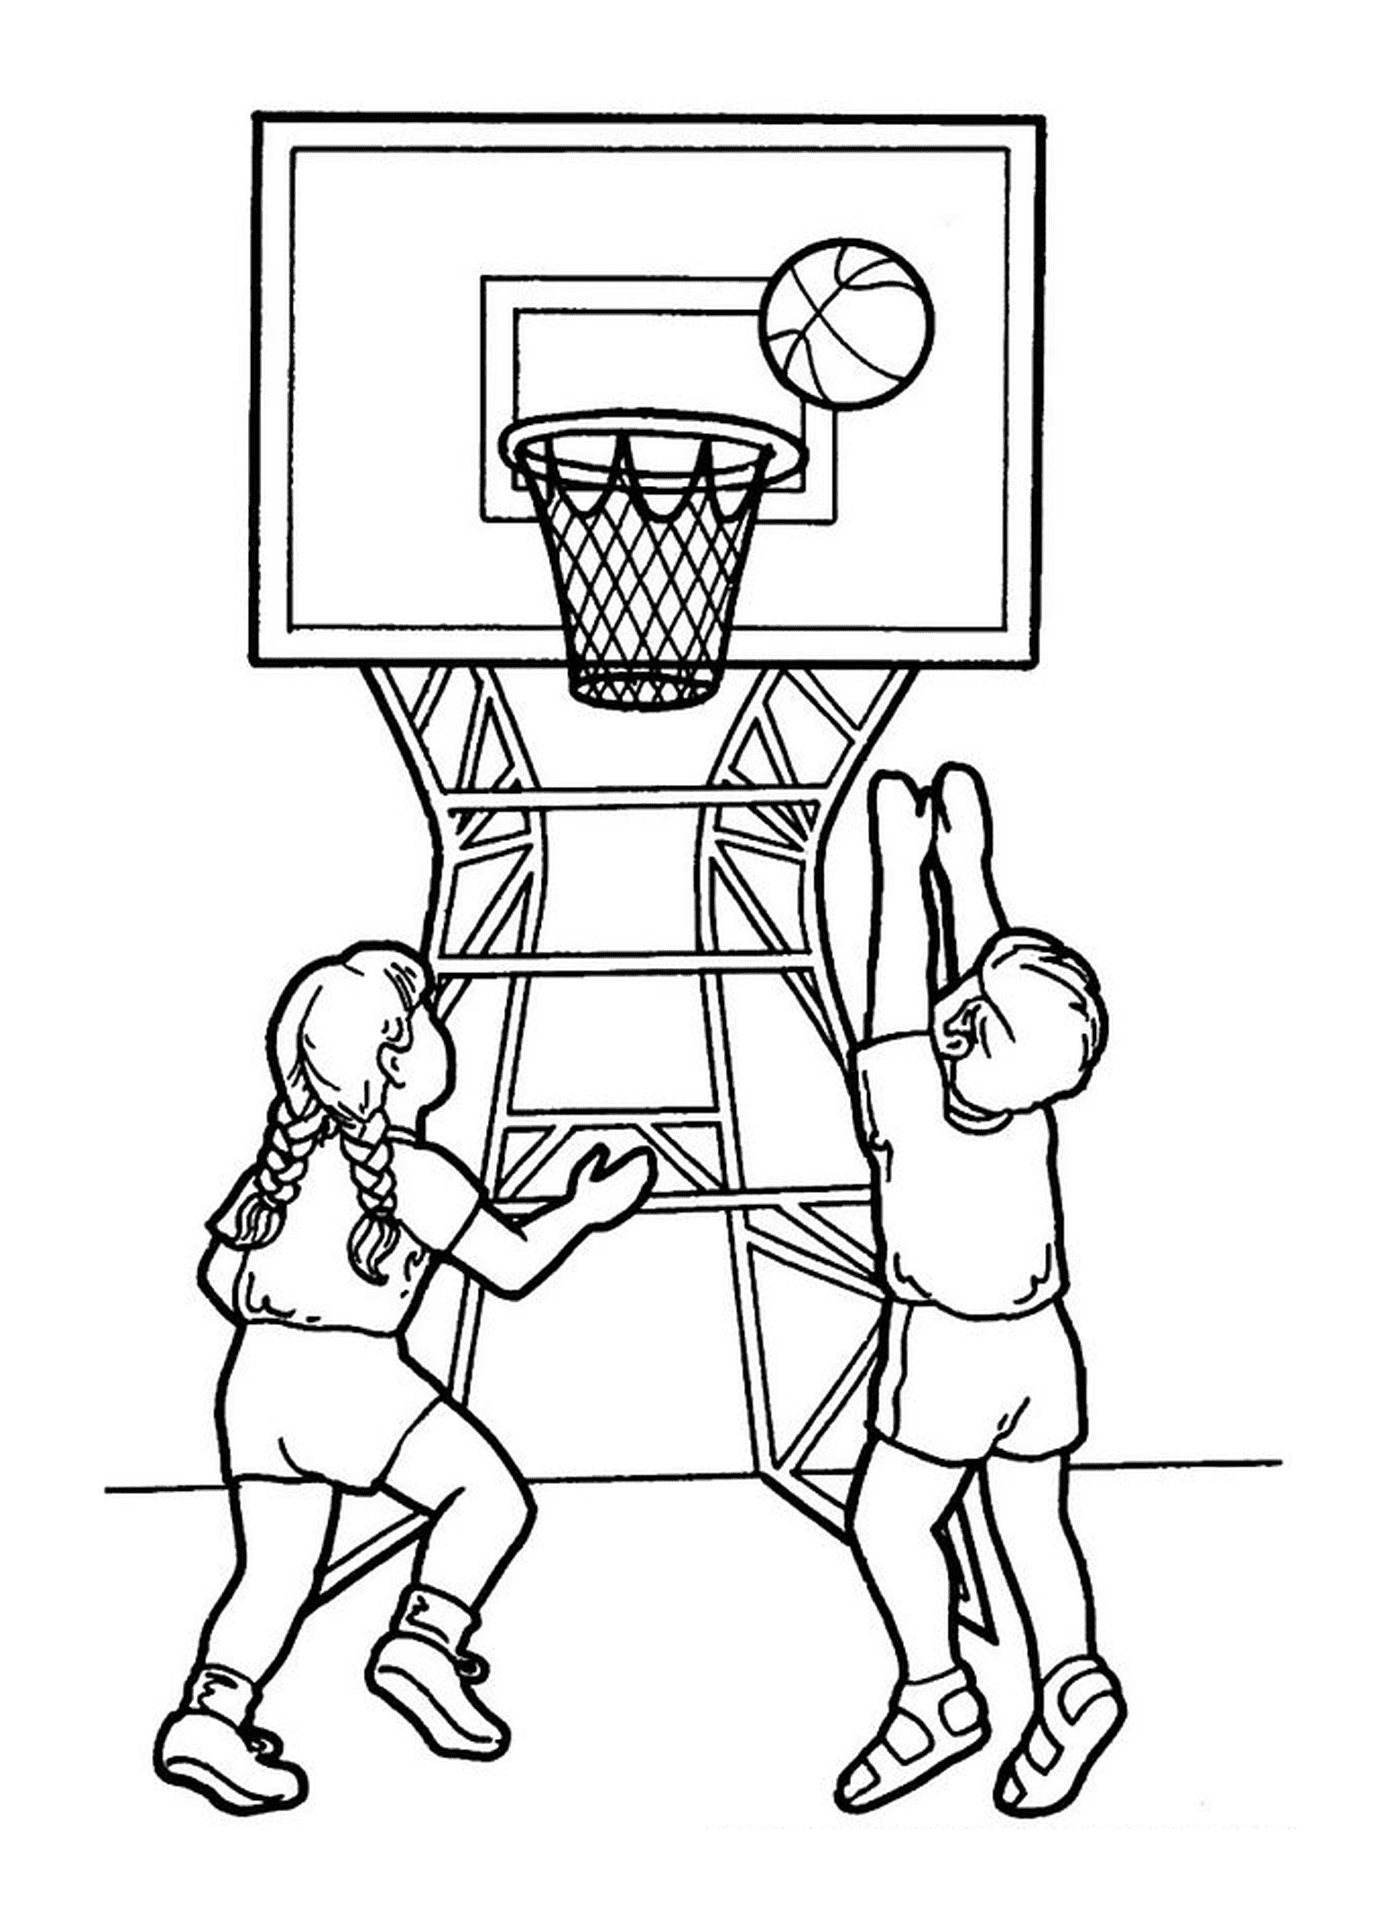  Un ragazzo e una ragazza giocano a basket 